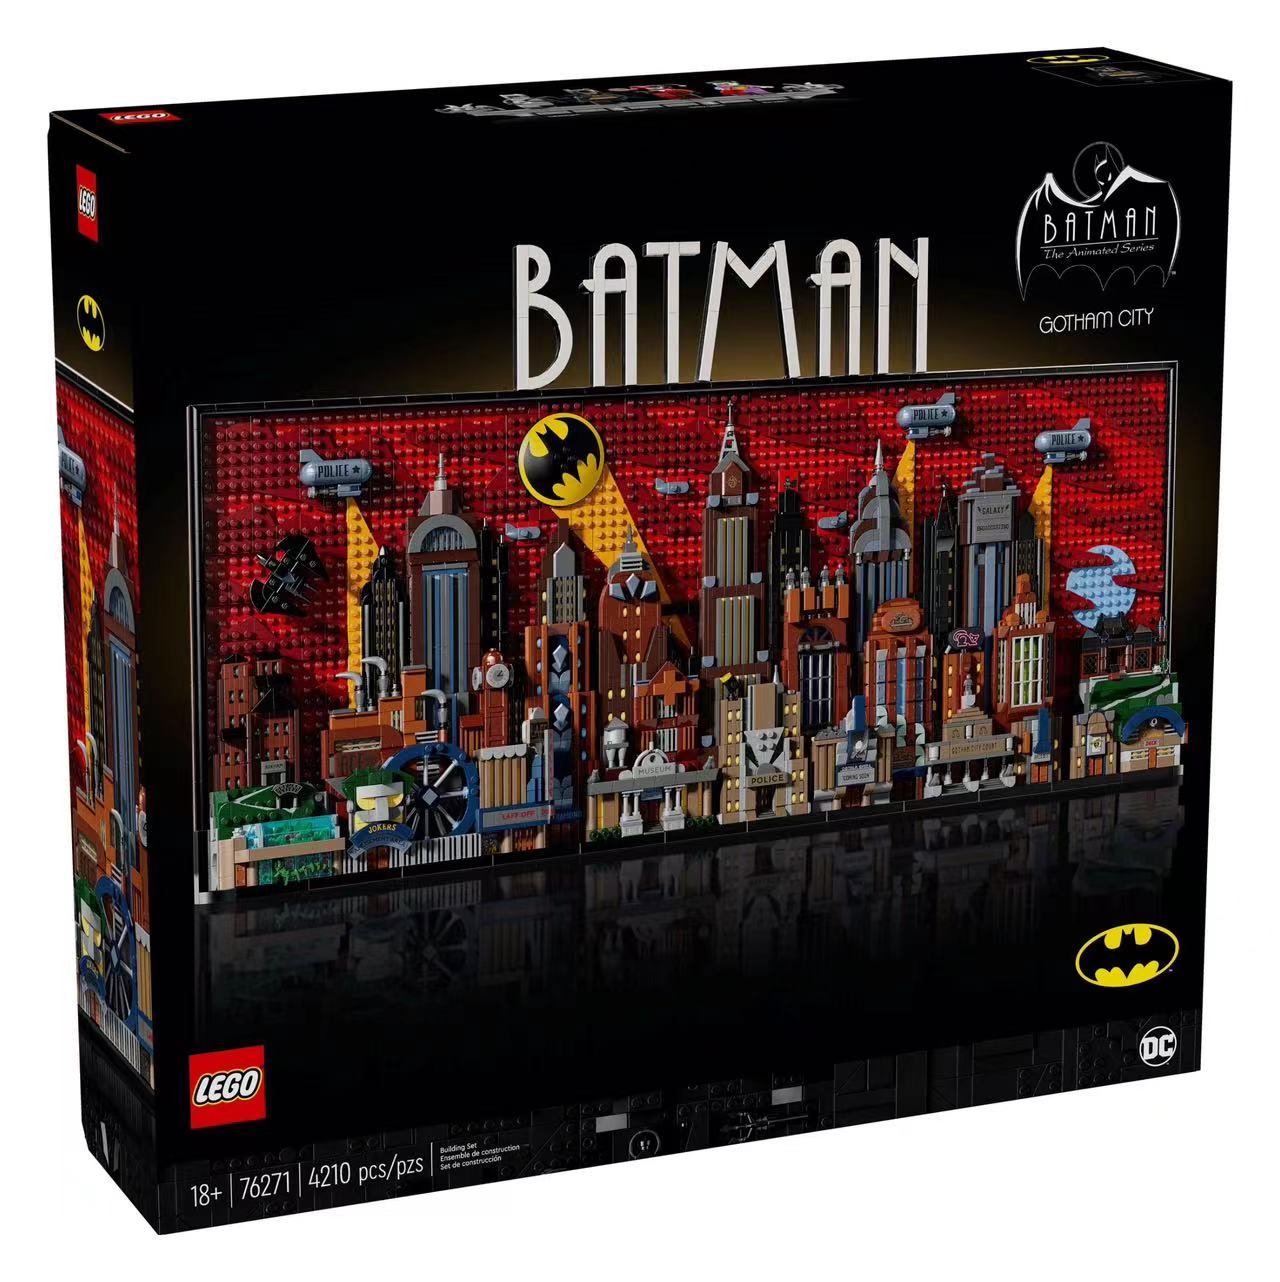 LEGO乐高76271超级英雄系列蝙蝠侠:动画版哥谭市男女益智拼装积木